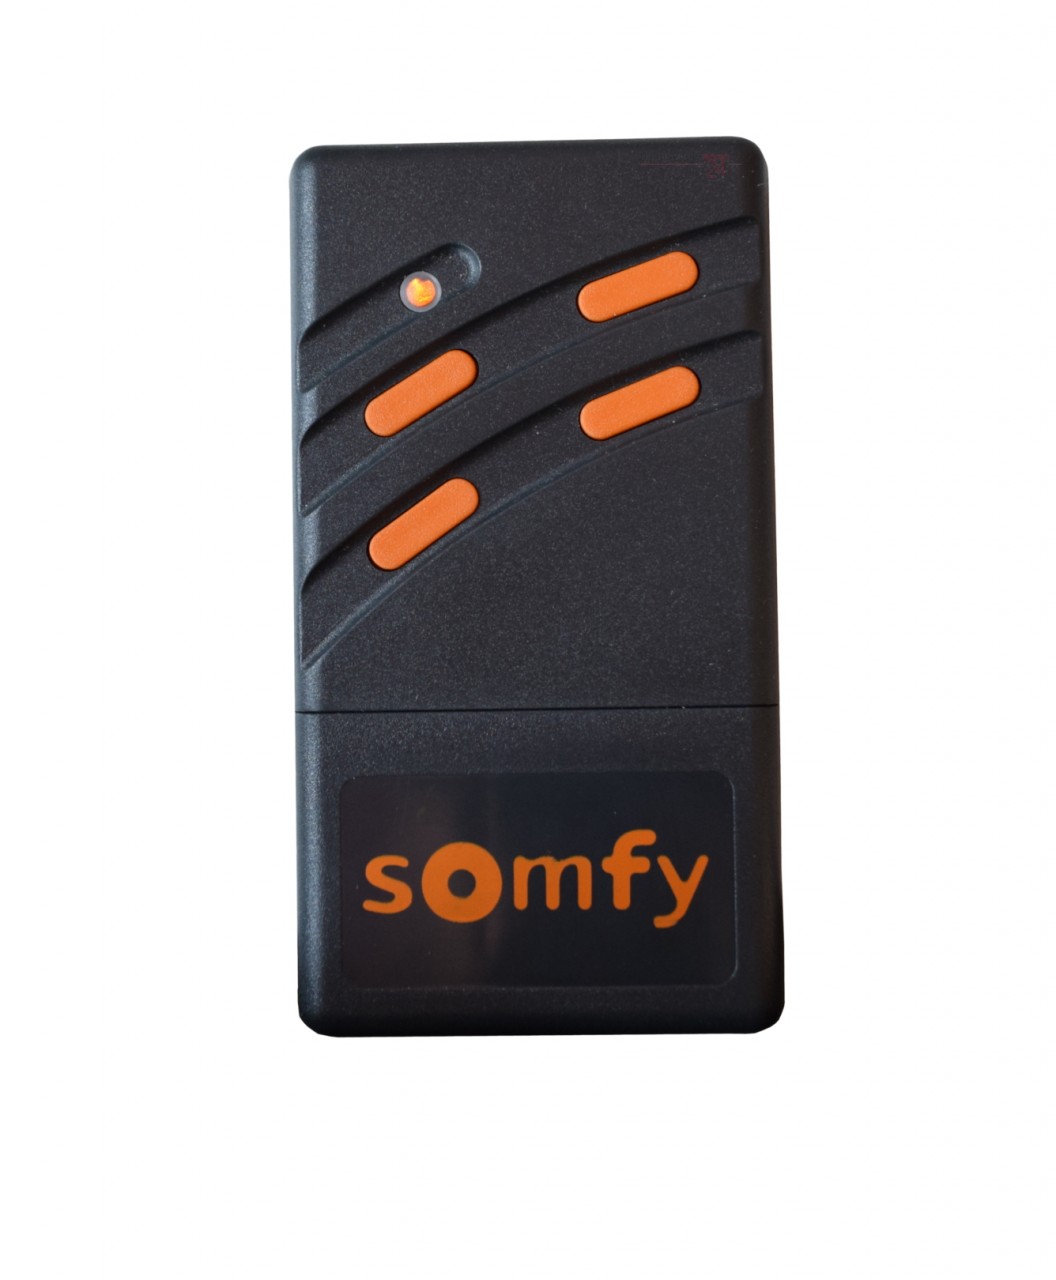 Somfy / Bosch Handsender 4-Kanal 26,995 MHz